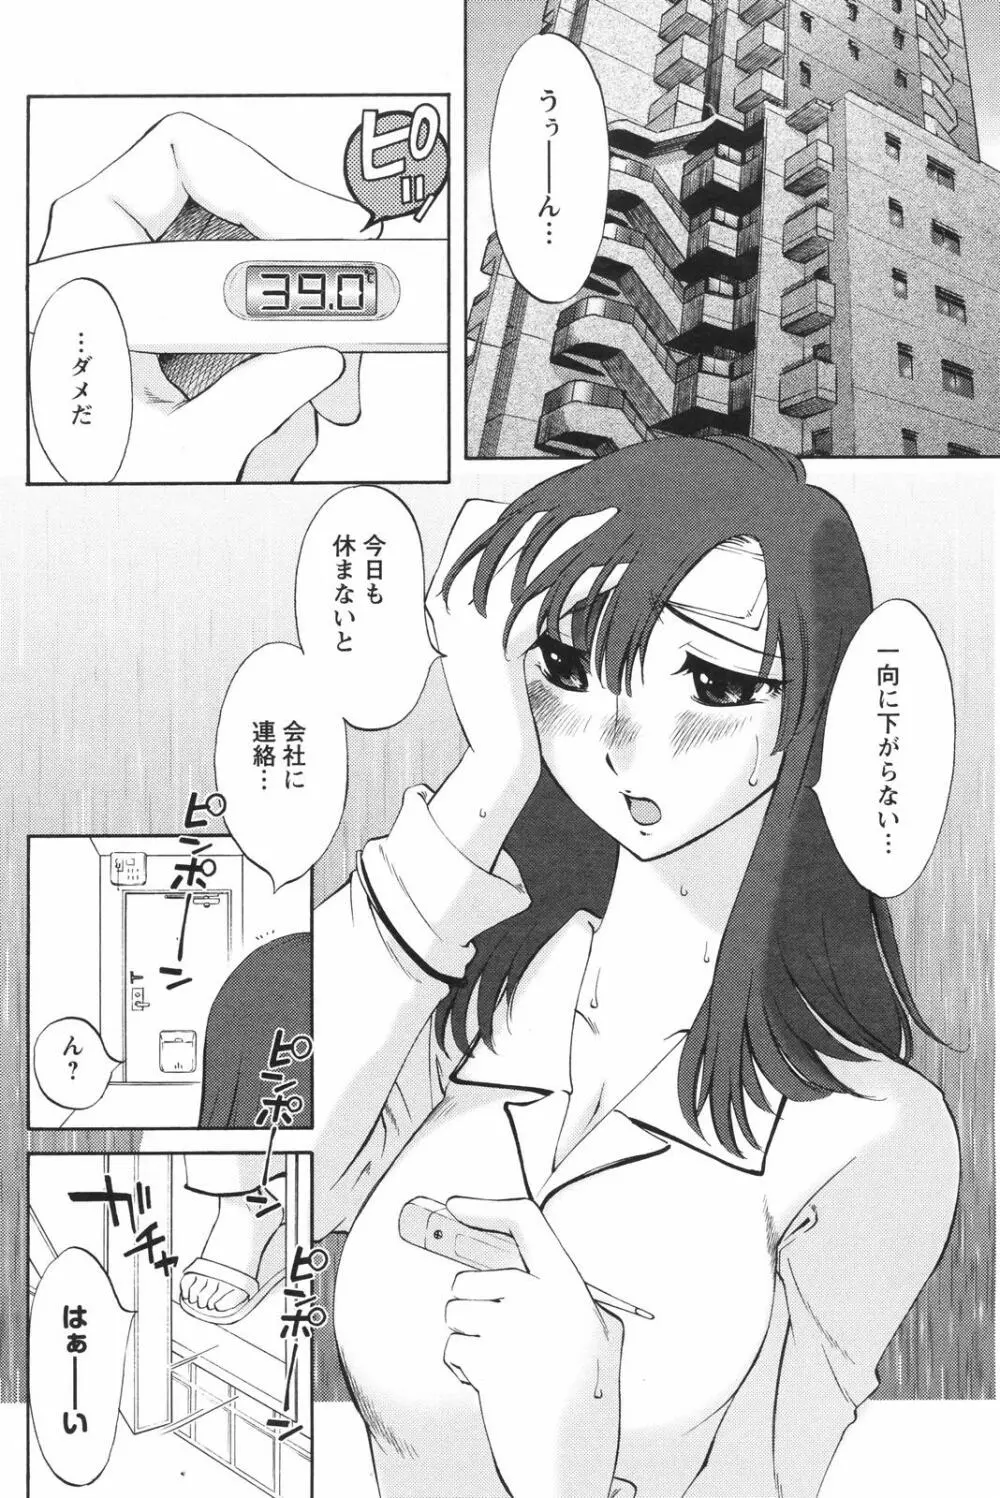 メンズヤングスペシャルIKAZUCHI雷 Vol.4 2007年12月号増刊 162ページ